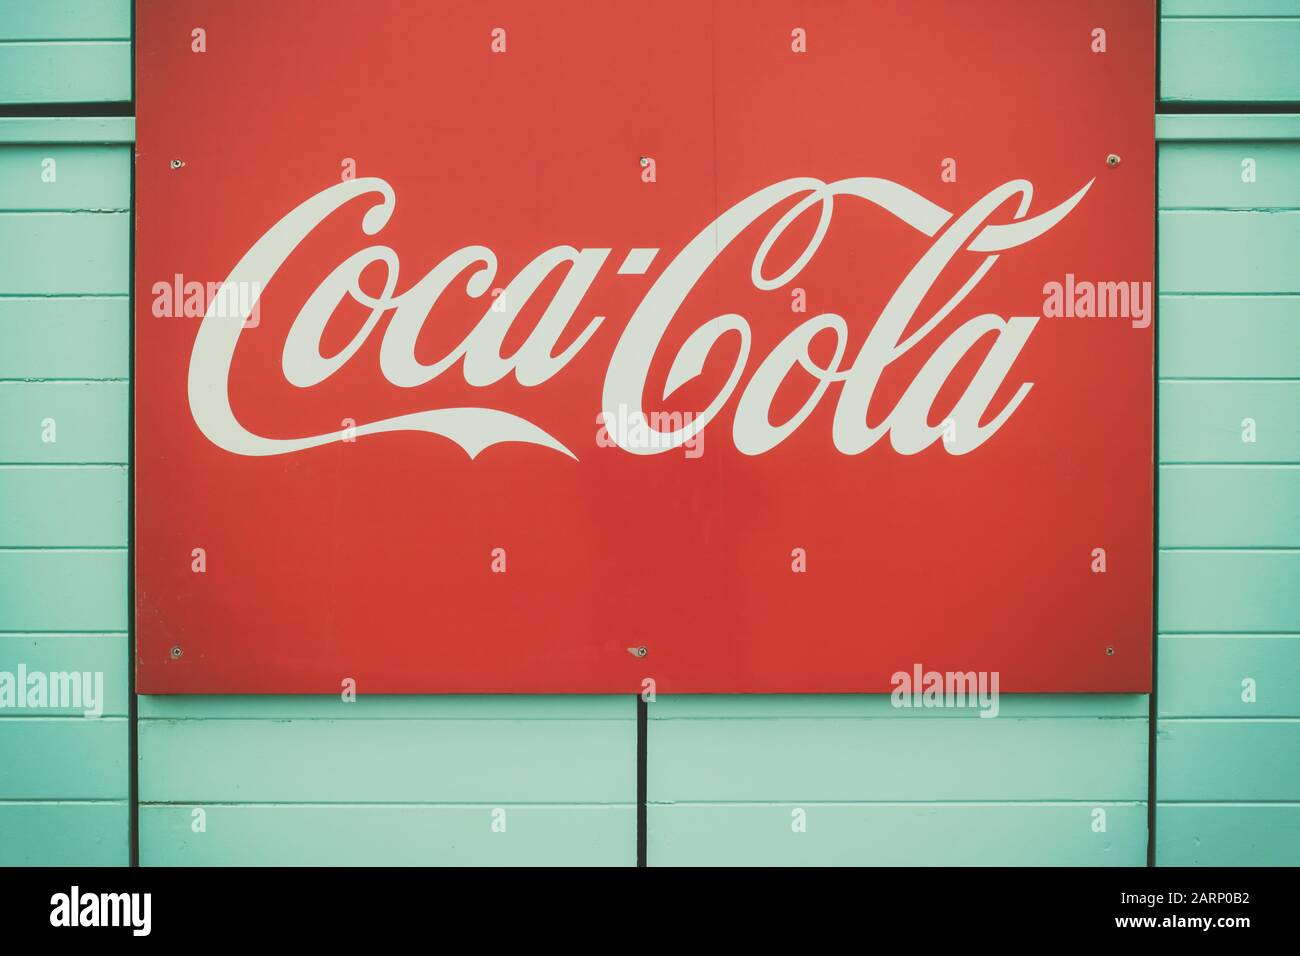 Rotterdam, Niederlande - 14. Januar 2020: Im Retro-Stil gestaltetes Bild eines Coca-Cola-Werbezeichens in Scheveningen, Niederlande Stockfoto